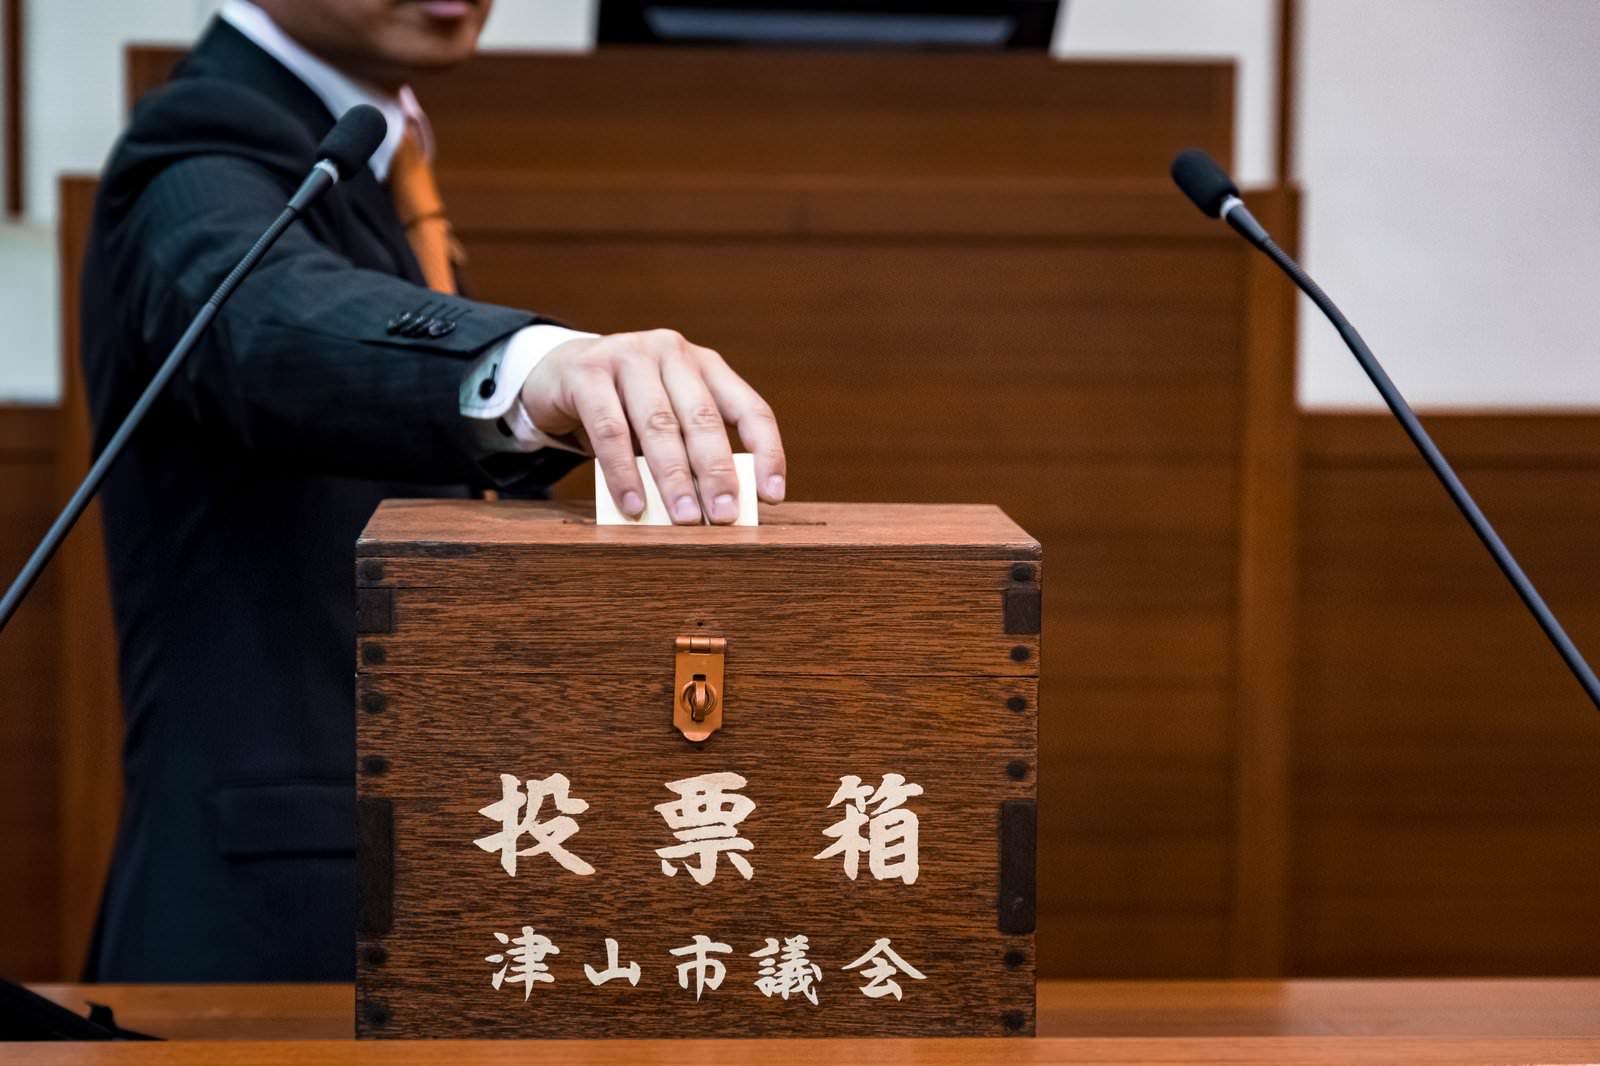 「投票箱に一票を投じる津山市議会議員 | フリー素材のぱくたそ」の写真